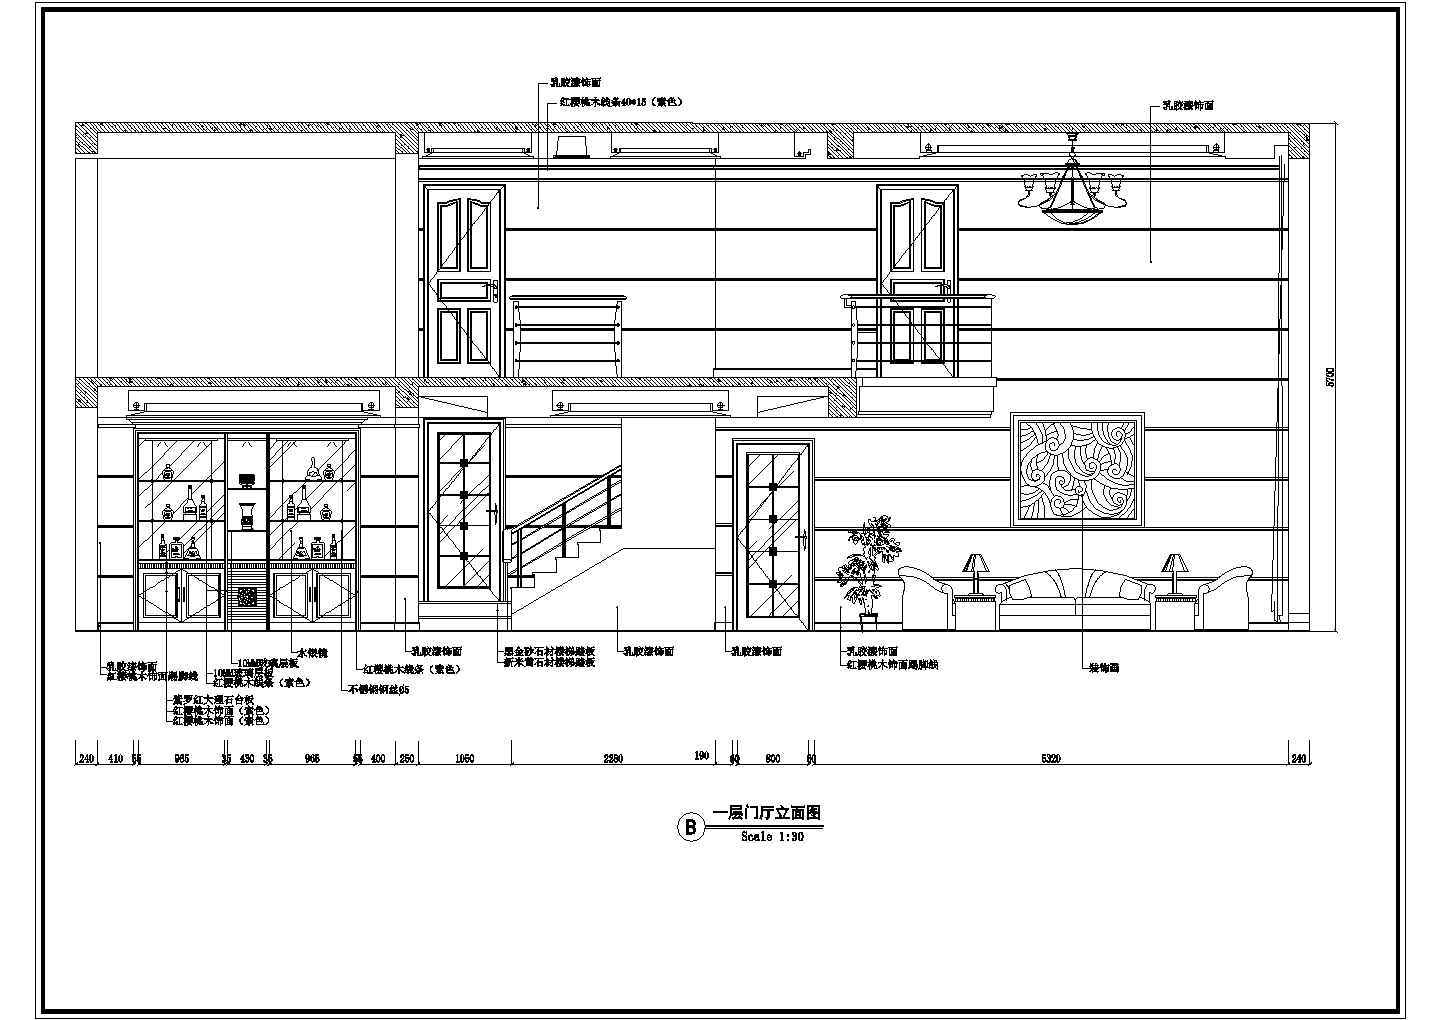 某二层砖混结构乡村别墅室内装修设计cad立面施工图（甲级院设计）